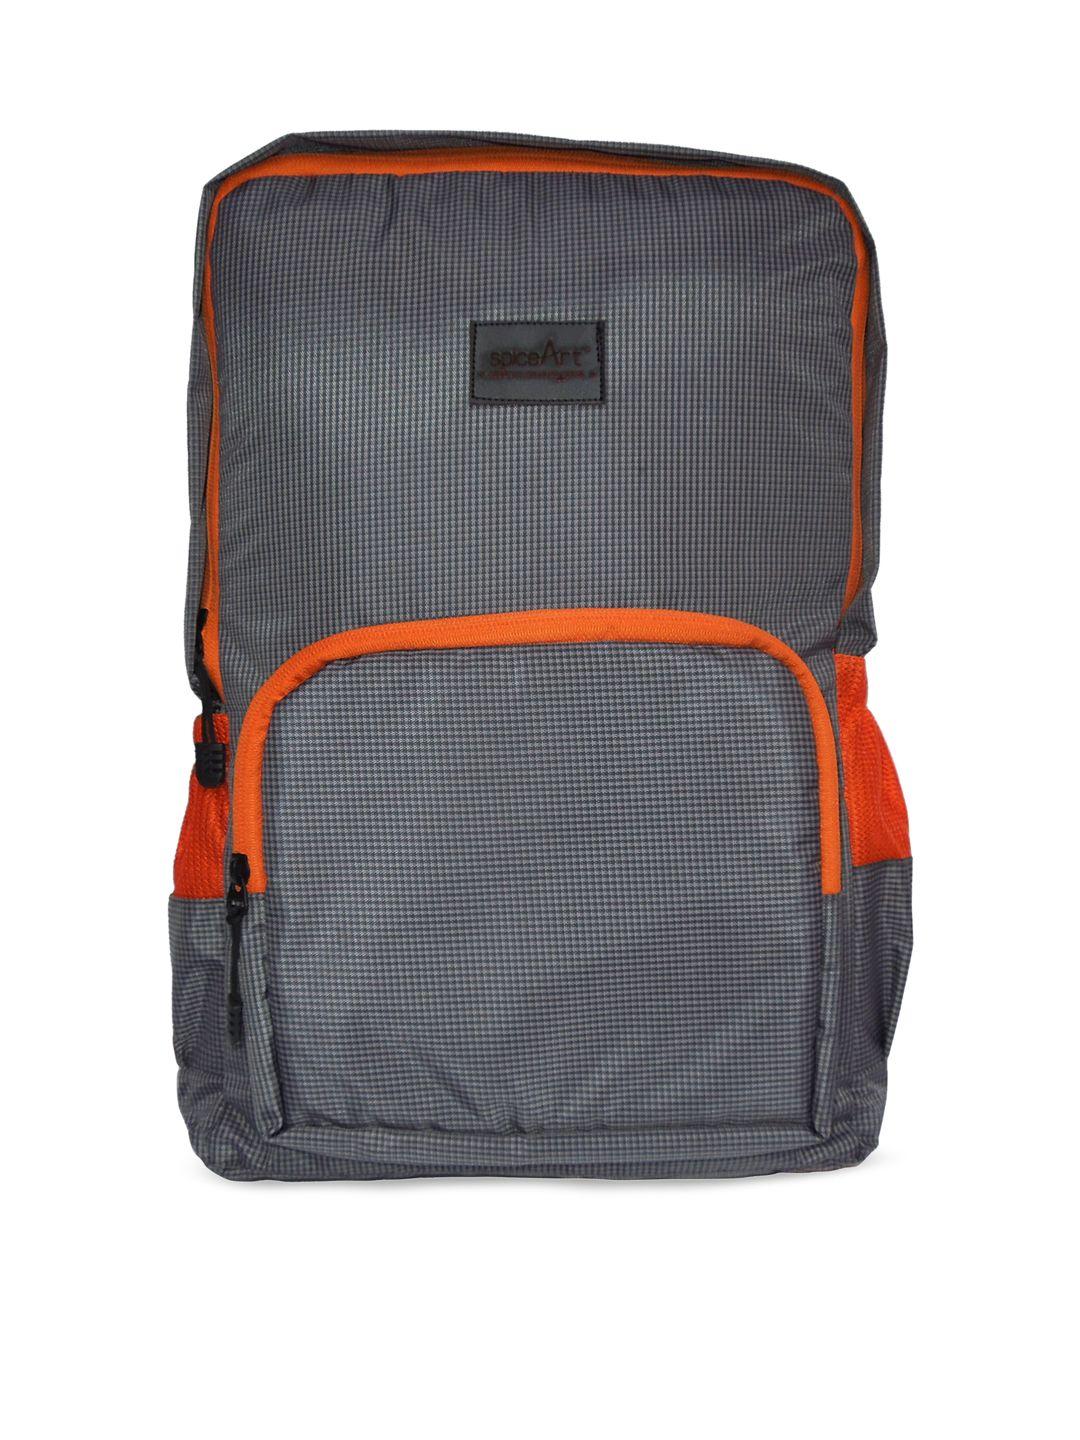 spice art unisex grey & orange backpack